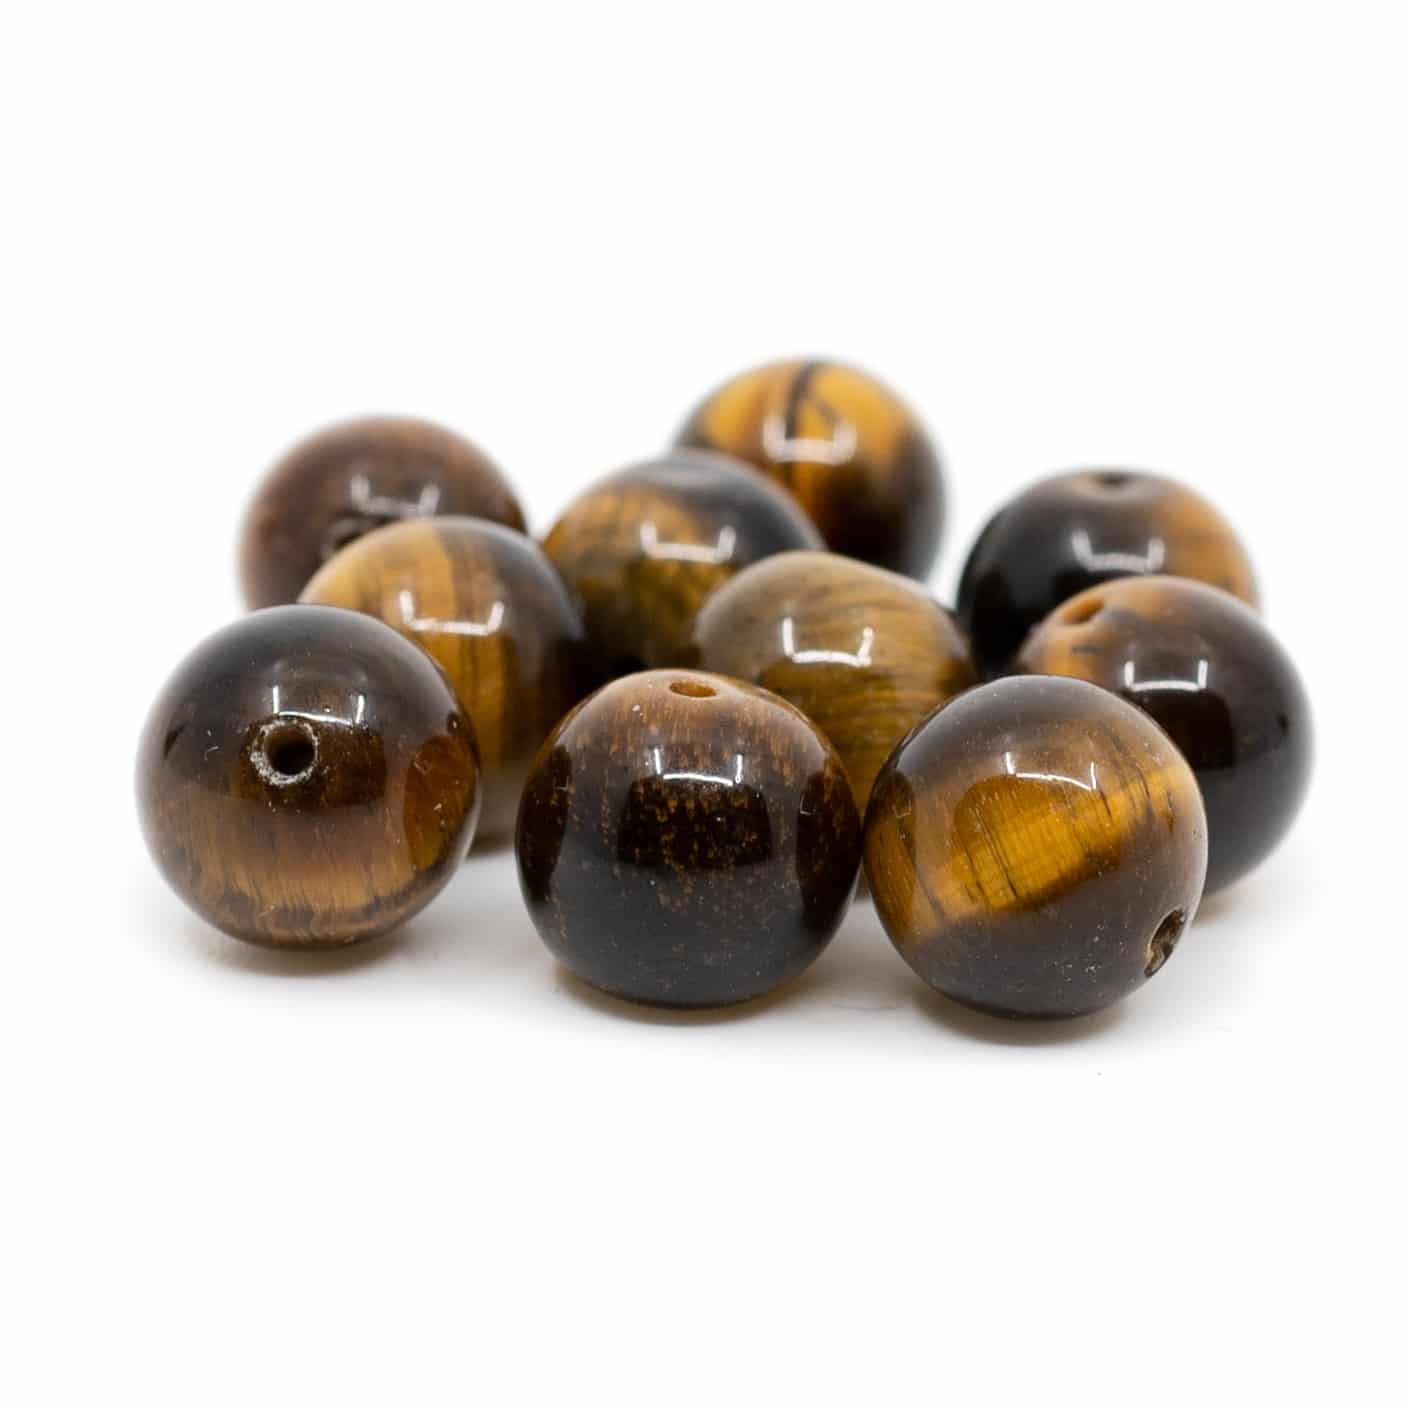 Gemstone Loose Beads Tiger Eye - 10 pieces (10 mm)